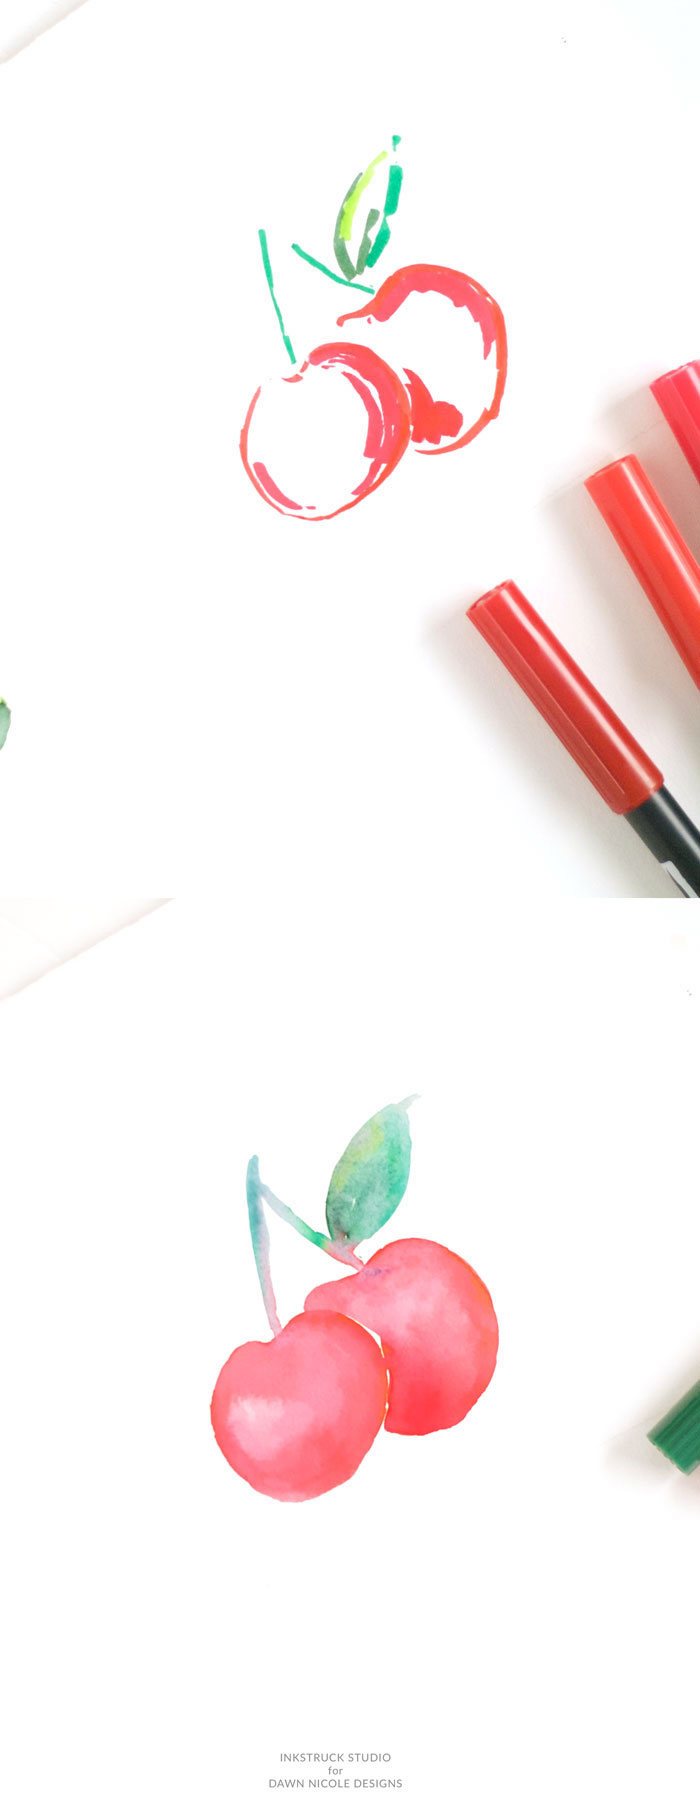 Wie zeichnet man Kirschen mit Filzstiften und Aquarellfarben, Anleitungen für Anfänger